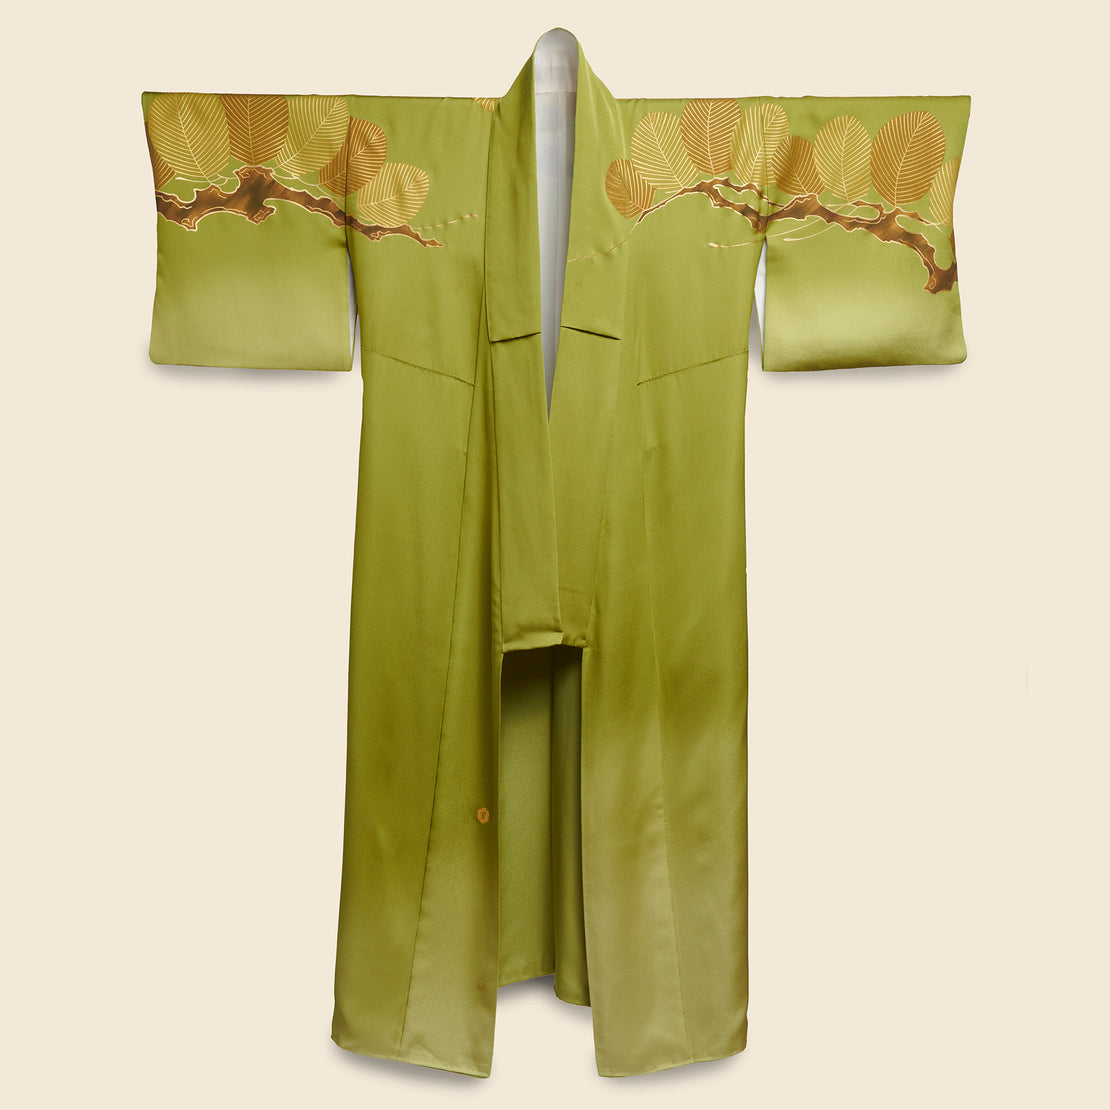 Vintage Long Silk Kimono - Green/Gold, Branch & Leaf Motif